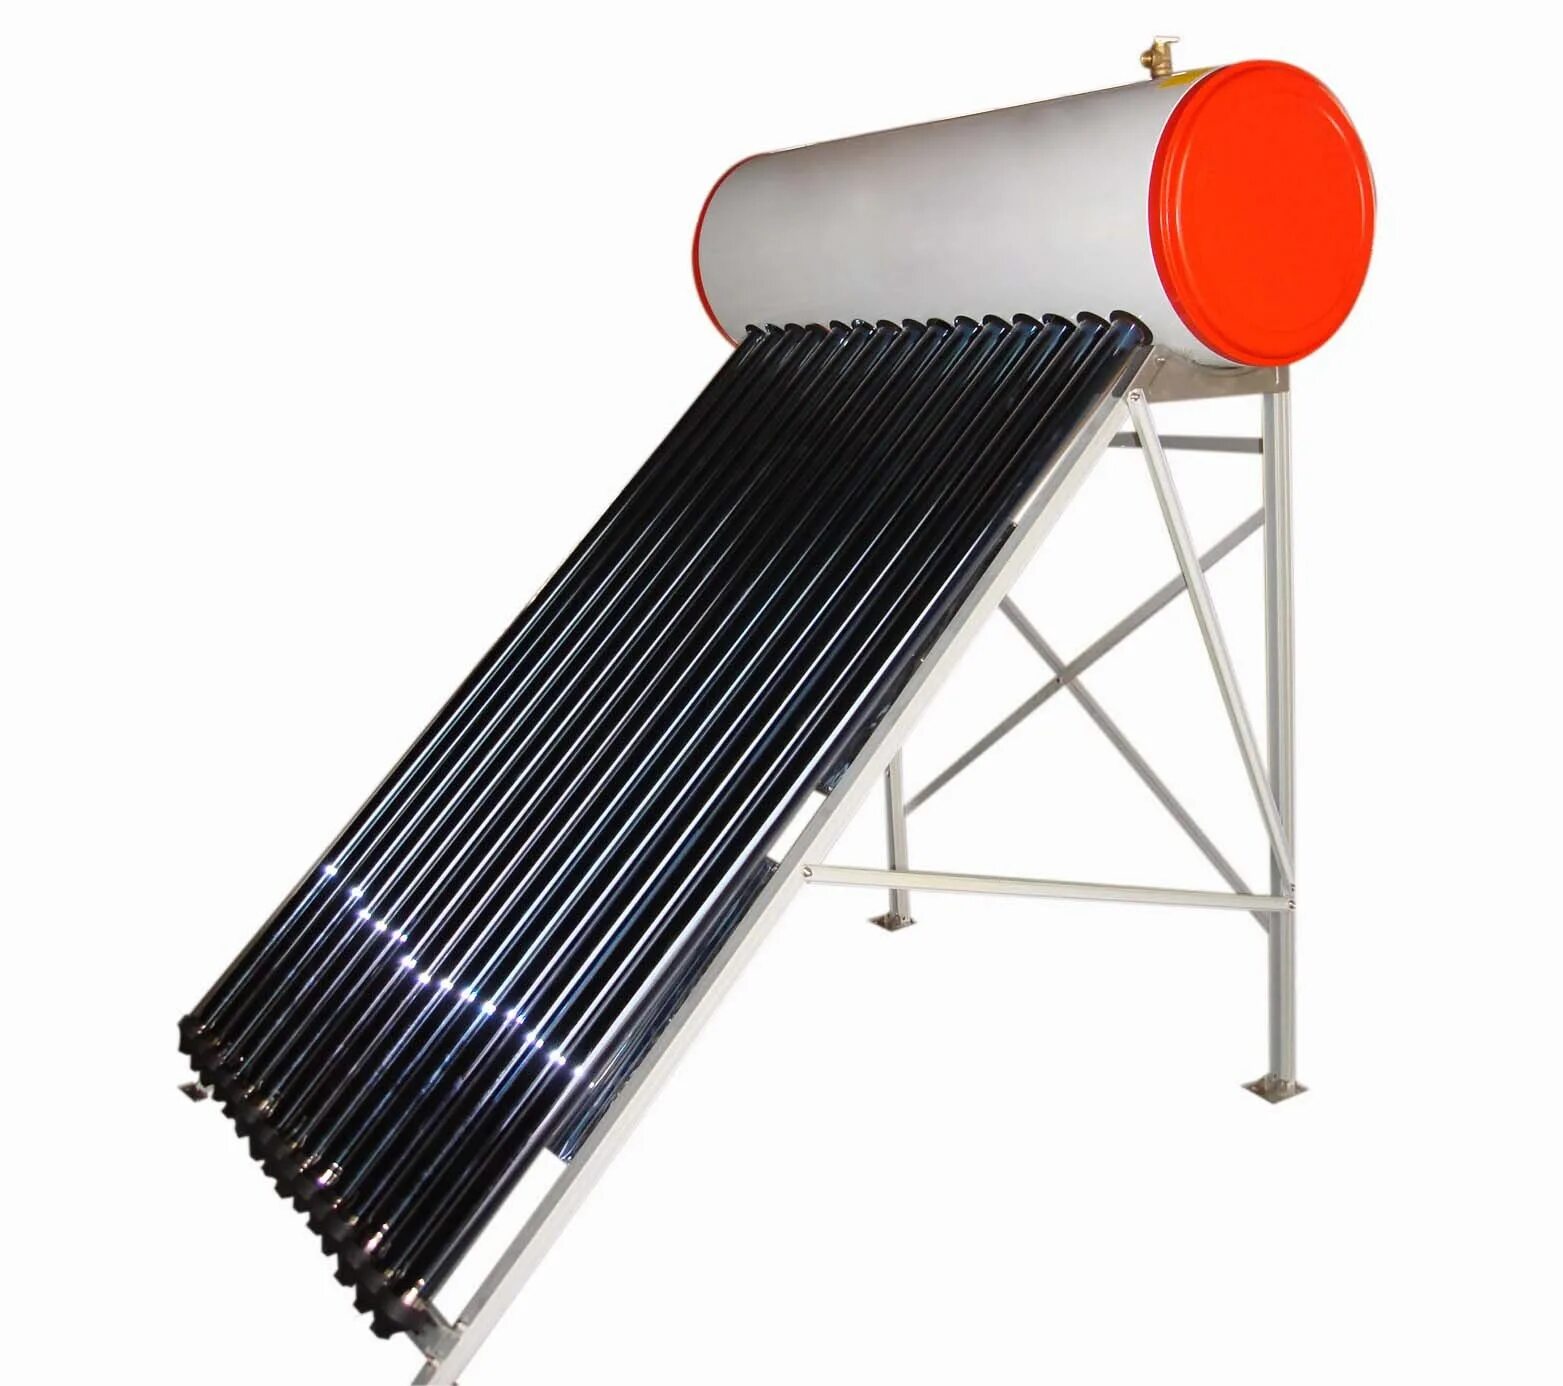 Солнечный водонагреватель Heat Pipe jph200-20. Compact pressurized Solar Water Heater. Solar Heater нагреватель для воды 6 метров. Солнечный водонагреватель 100. Солнечный коллектор воды купить